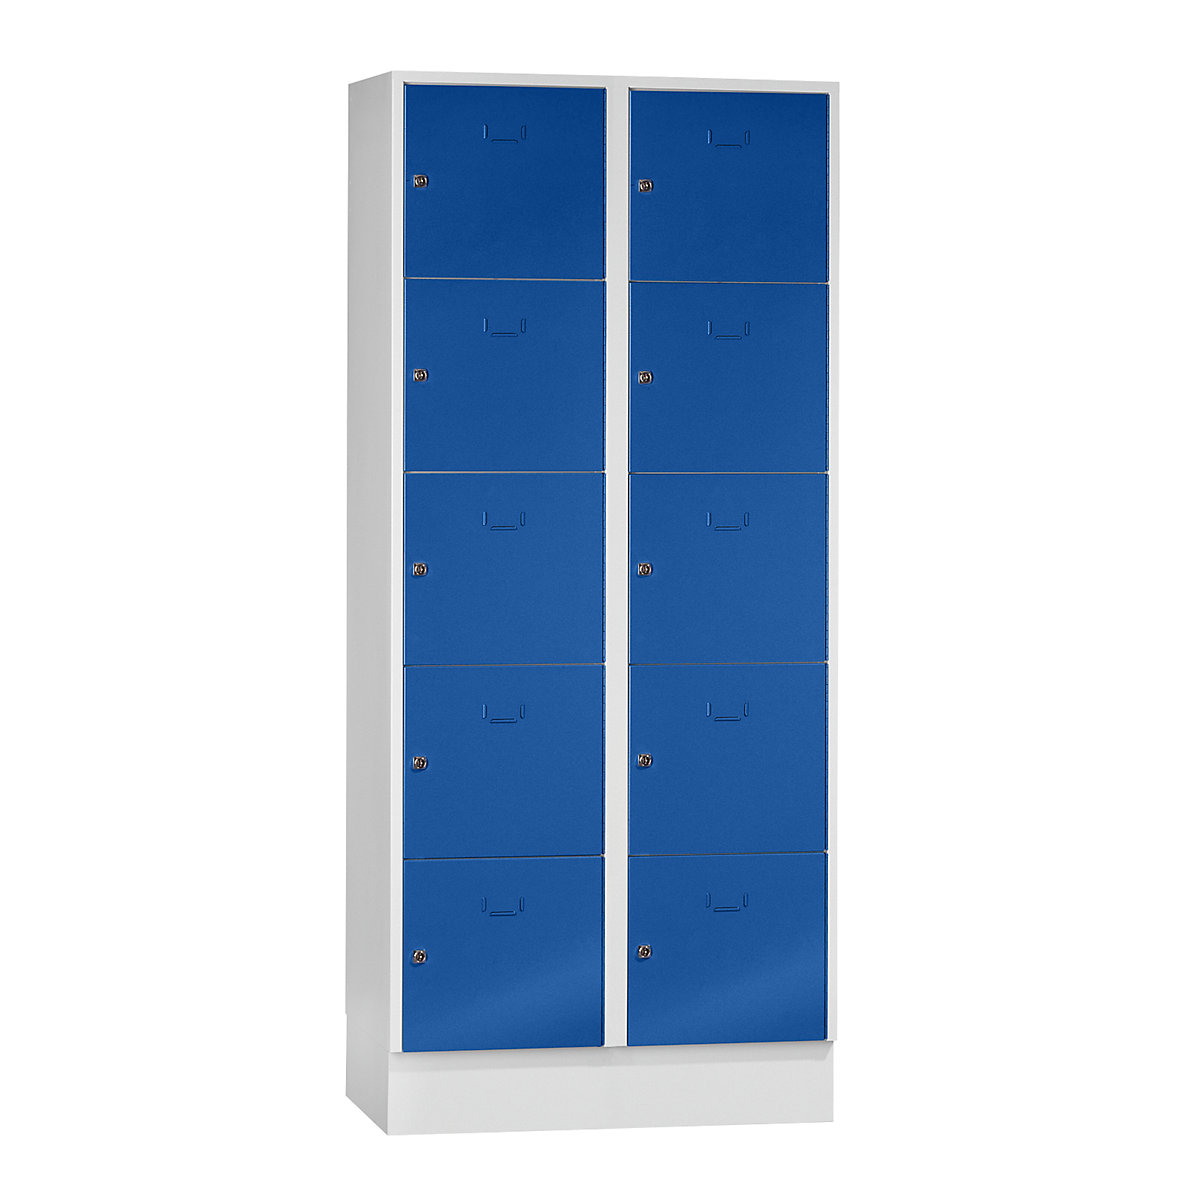 Wolf – Vestiaire modulaire à casiers verrouillables, 10 casiers, largeur 400 mm, bleu gentiane / gris clair